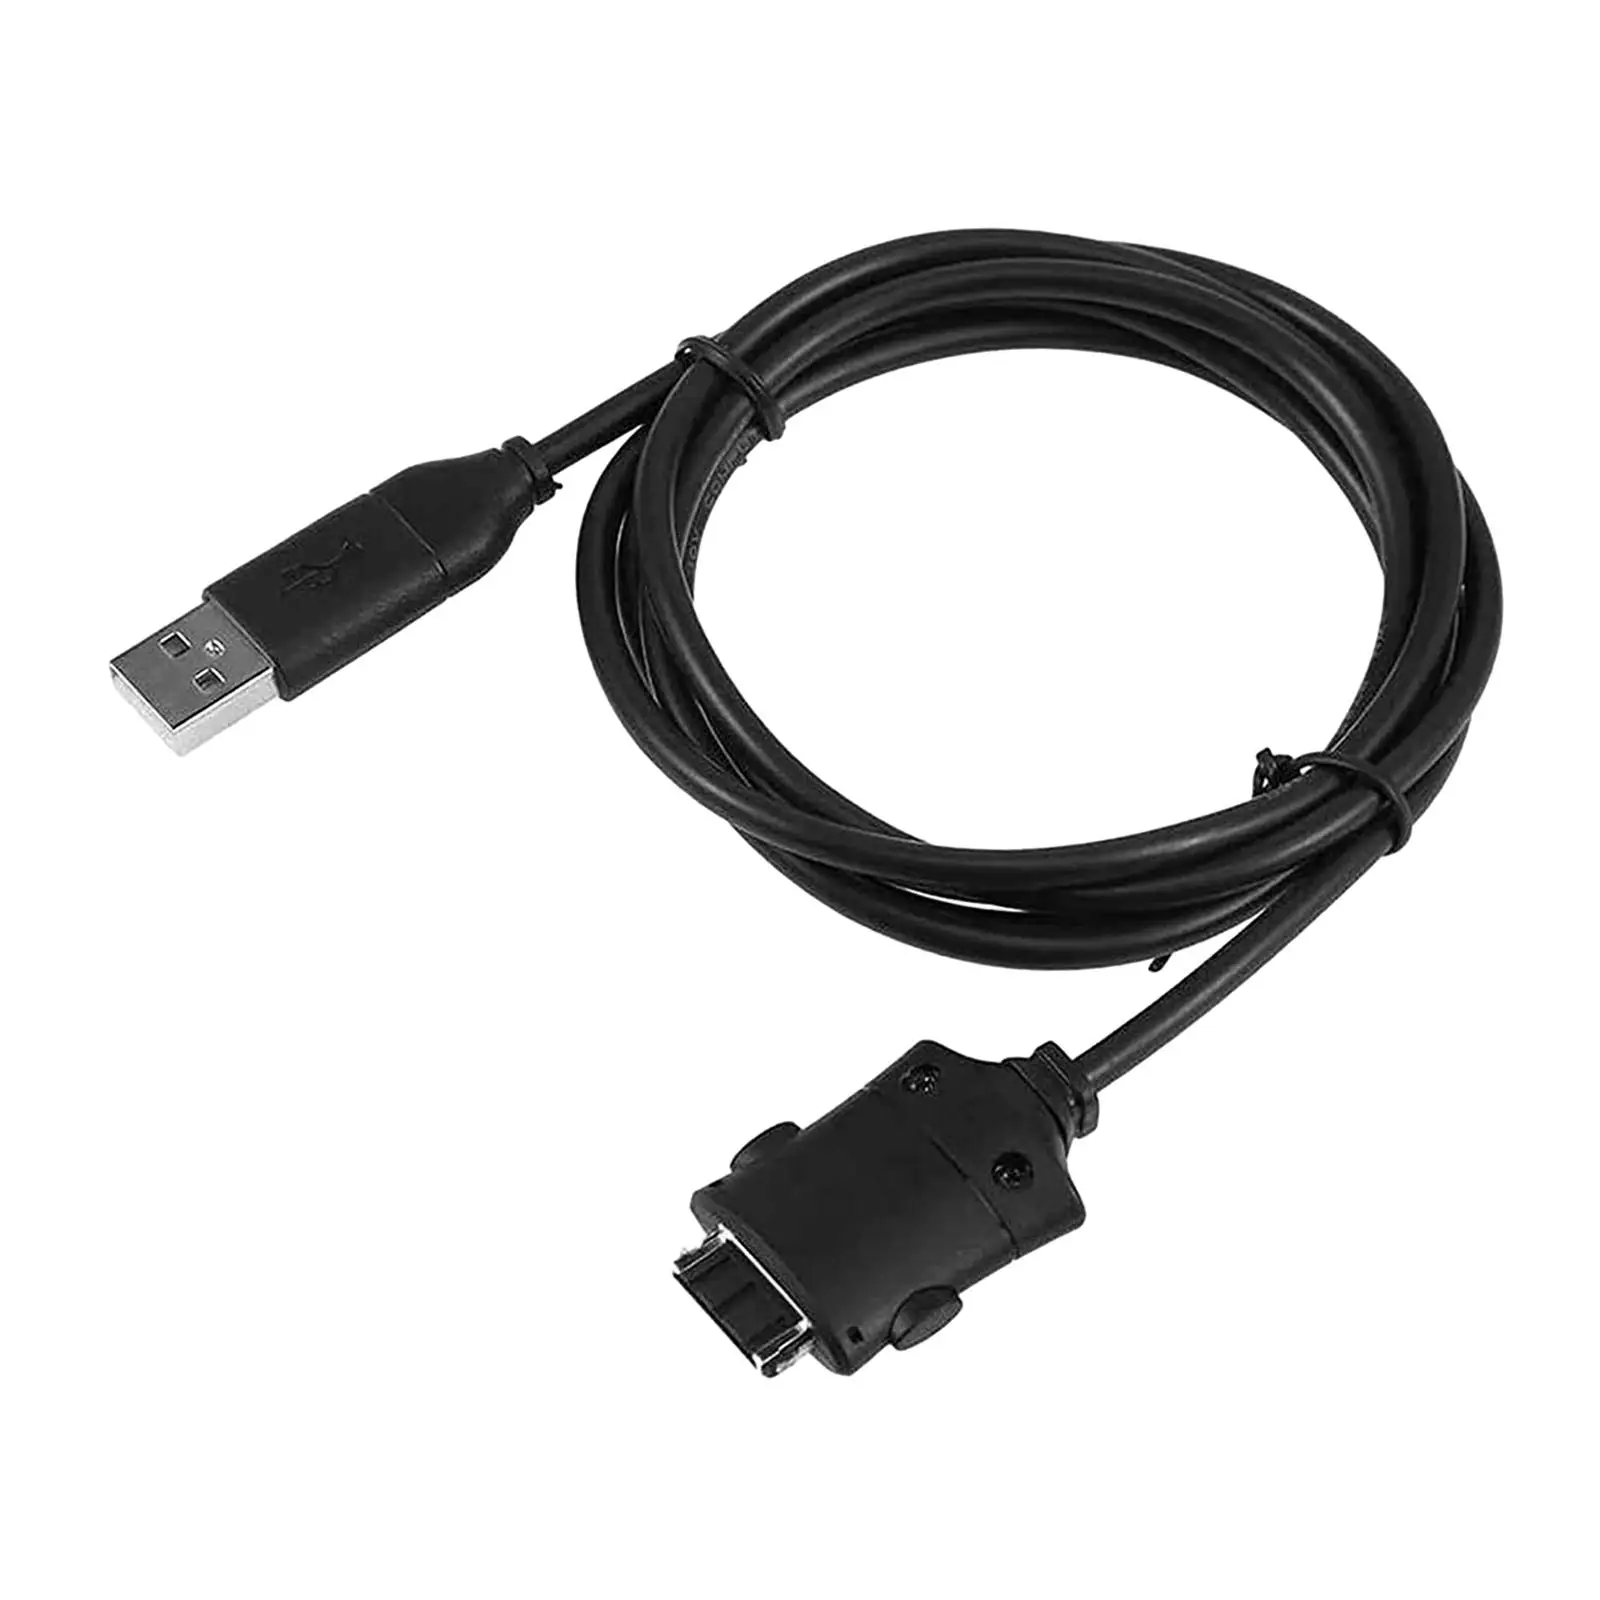 Suc-c2 USB Кабель Для Зарядки Данных Шнур Простой в Использовании Аксессуар Прочный Сменный Шнур для Передачи данных для Цифровой Камеры i85 L83T L70 i6 - 2